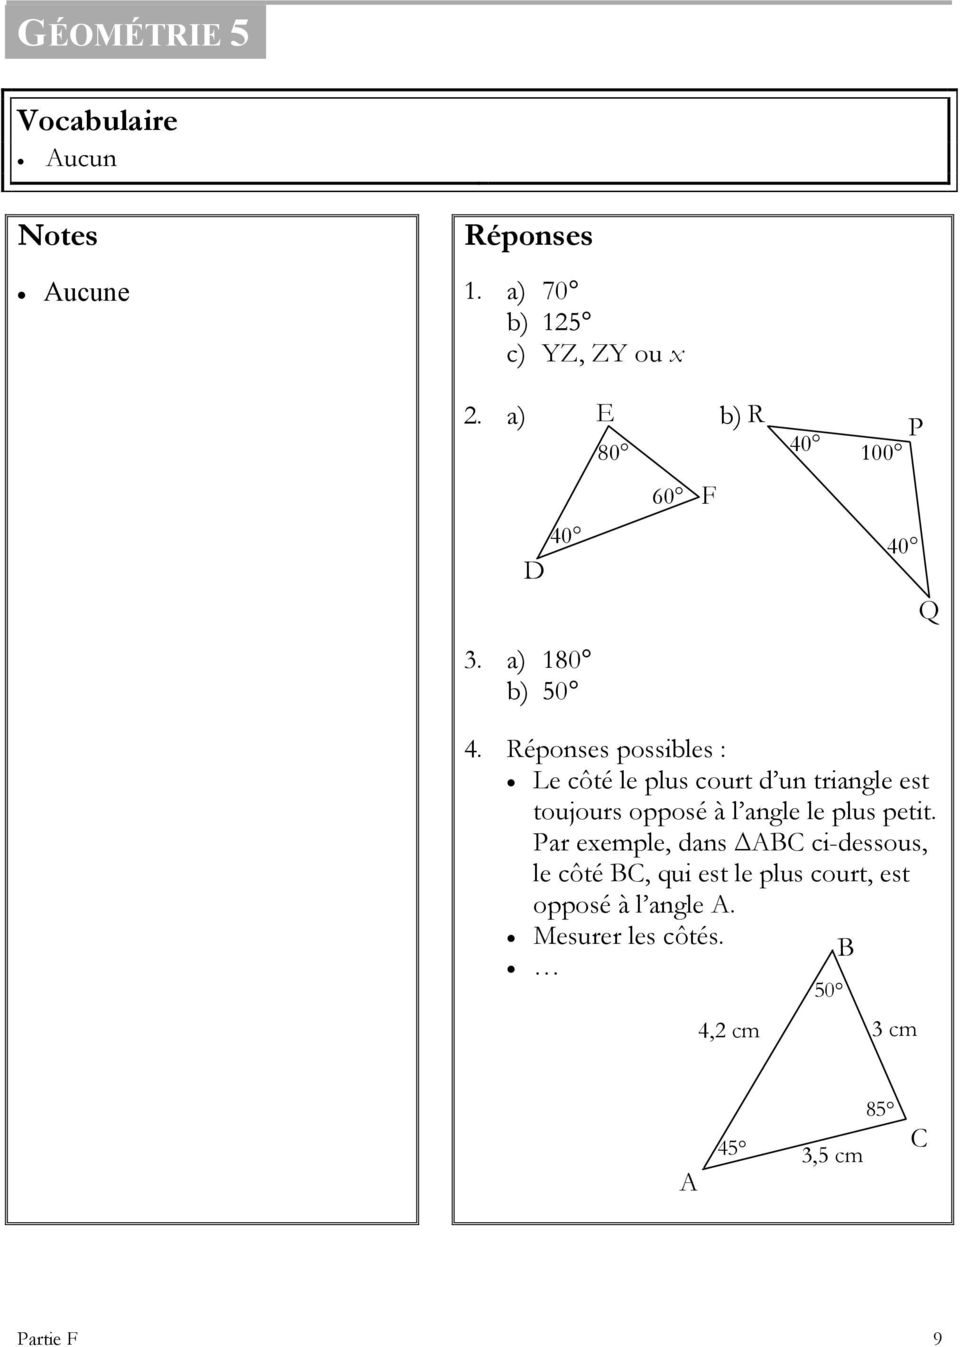 Réponses possibles : Le côté le plus court d un triangle est toujours opposé à l angle le plus